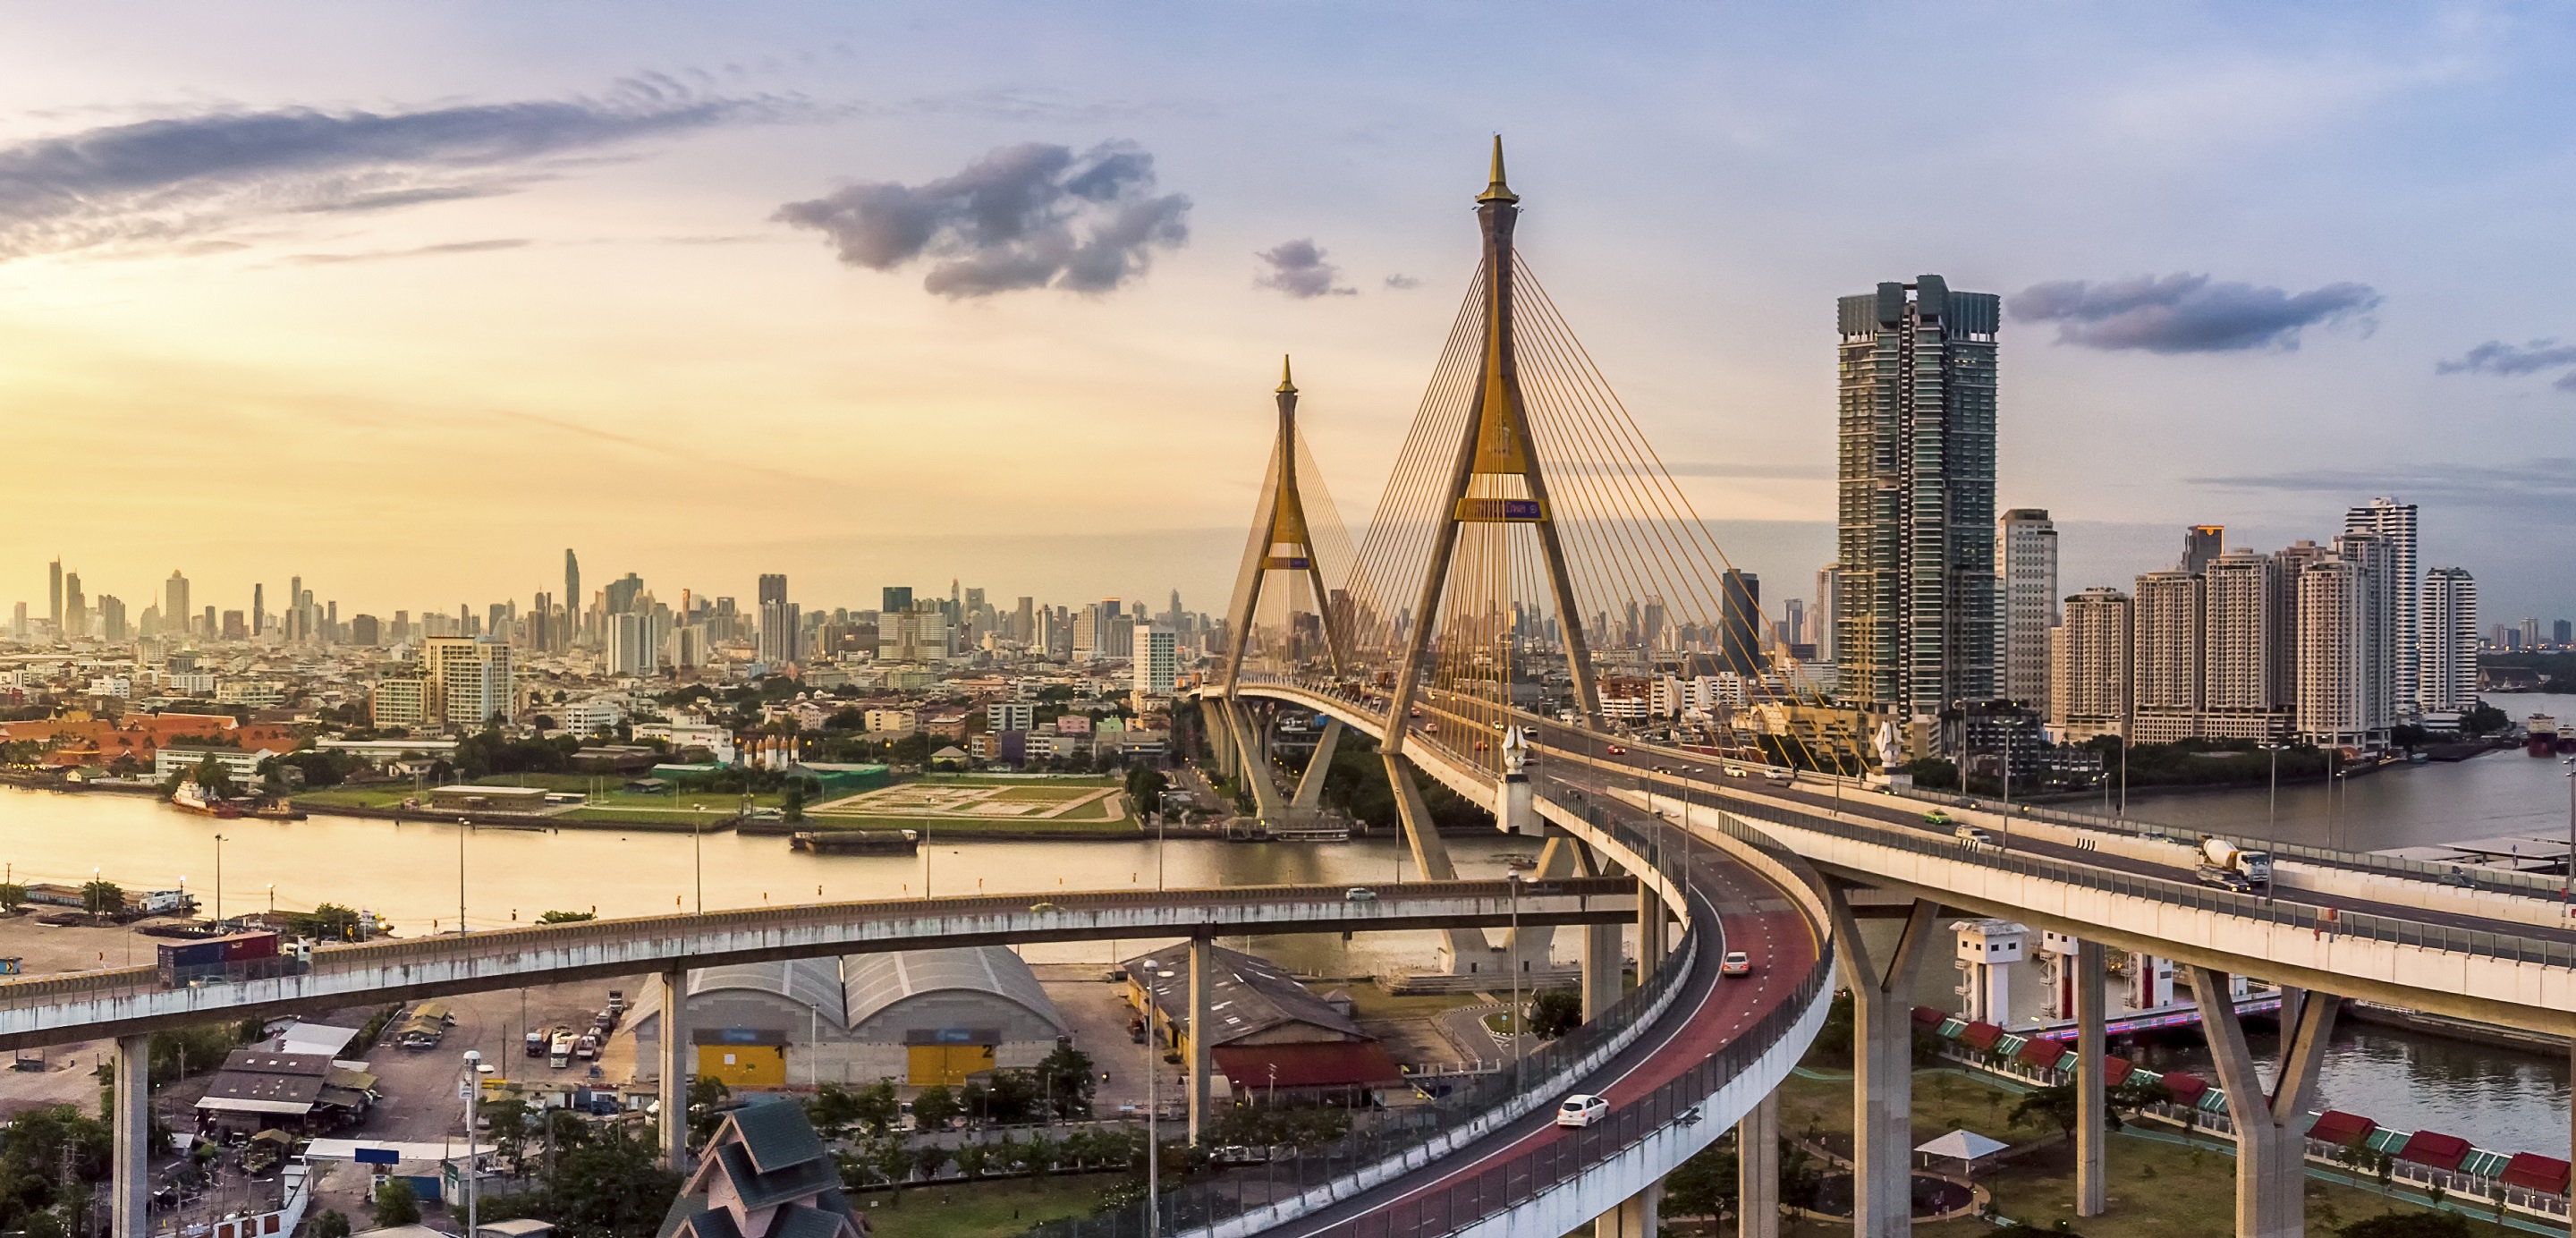 Thailand bridge showing international connectivity